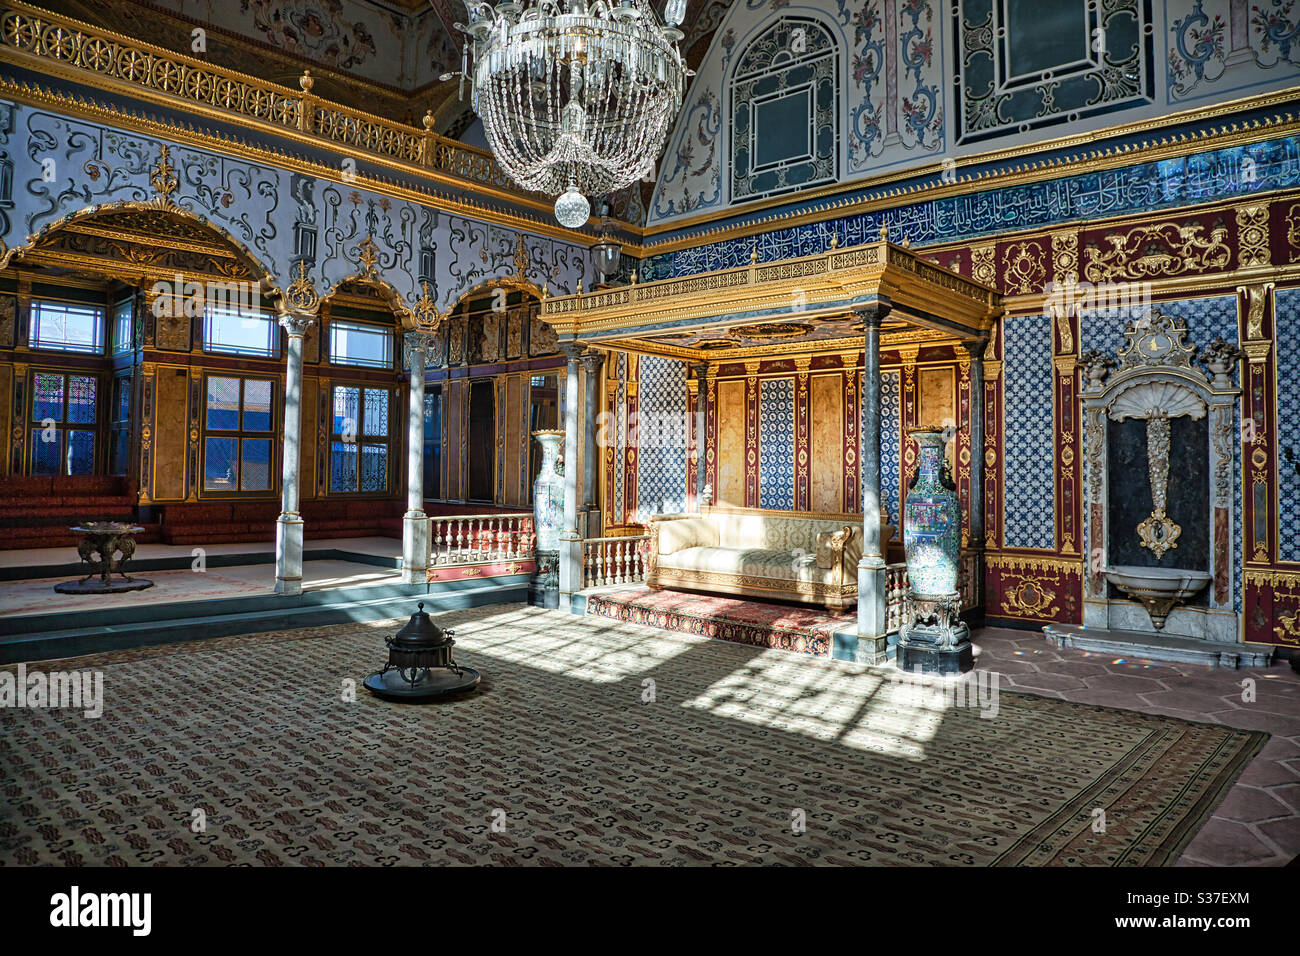 El Harem en el Palacio Topkapi, Estambul, Turquía. El palacio fue el lugar residencial oficial de los sultanes otomanos. El Harem consistía en apartamentos donde los sultanes vivían con sus familias. Foto de stock